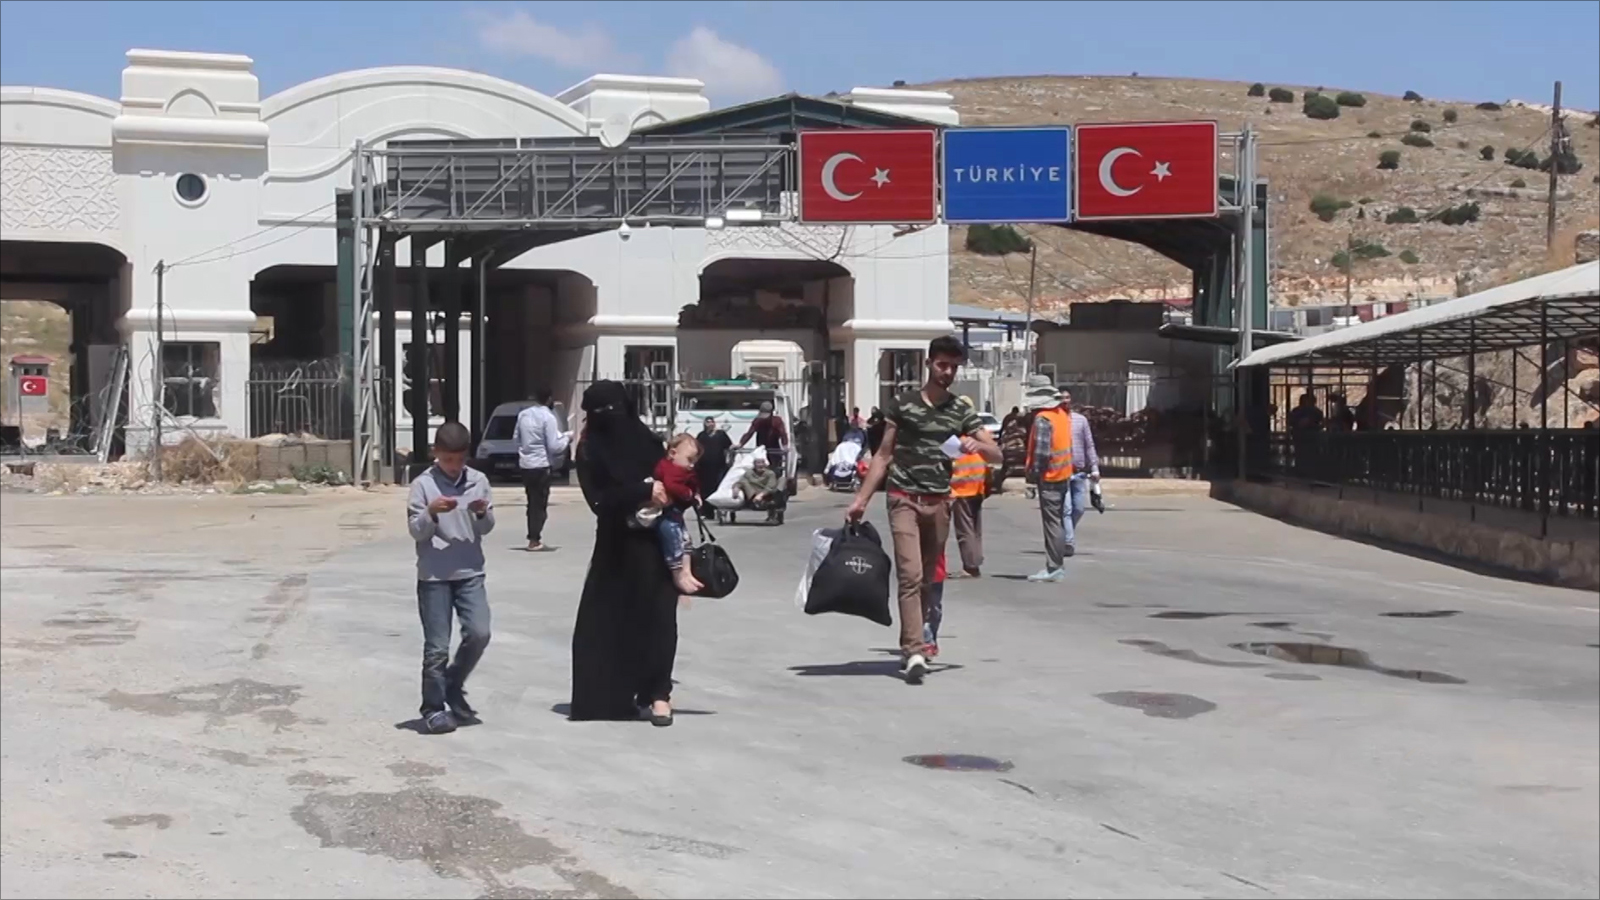 ‪تركيا تتيح للاجئين السوريين قضاء العيد في بلدهم‬ تركيا تتيح للاجئين السوريين قضاء العيد في بلدهم (الجزيرة-أرشيف)